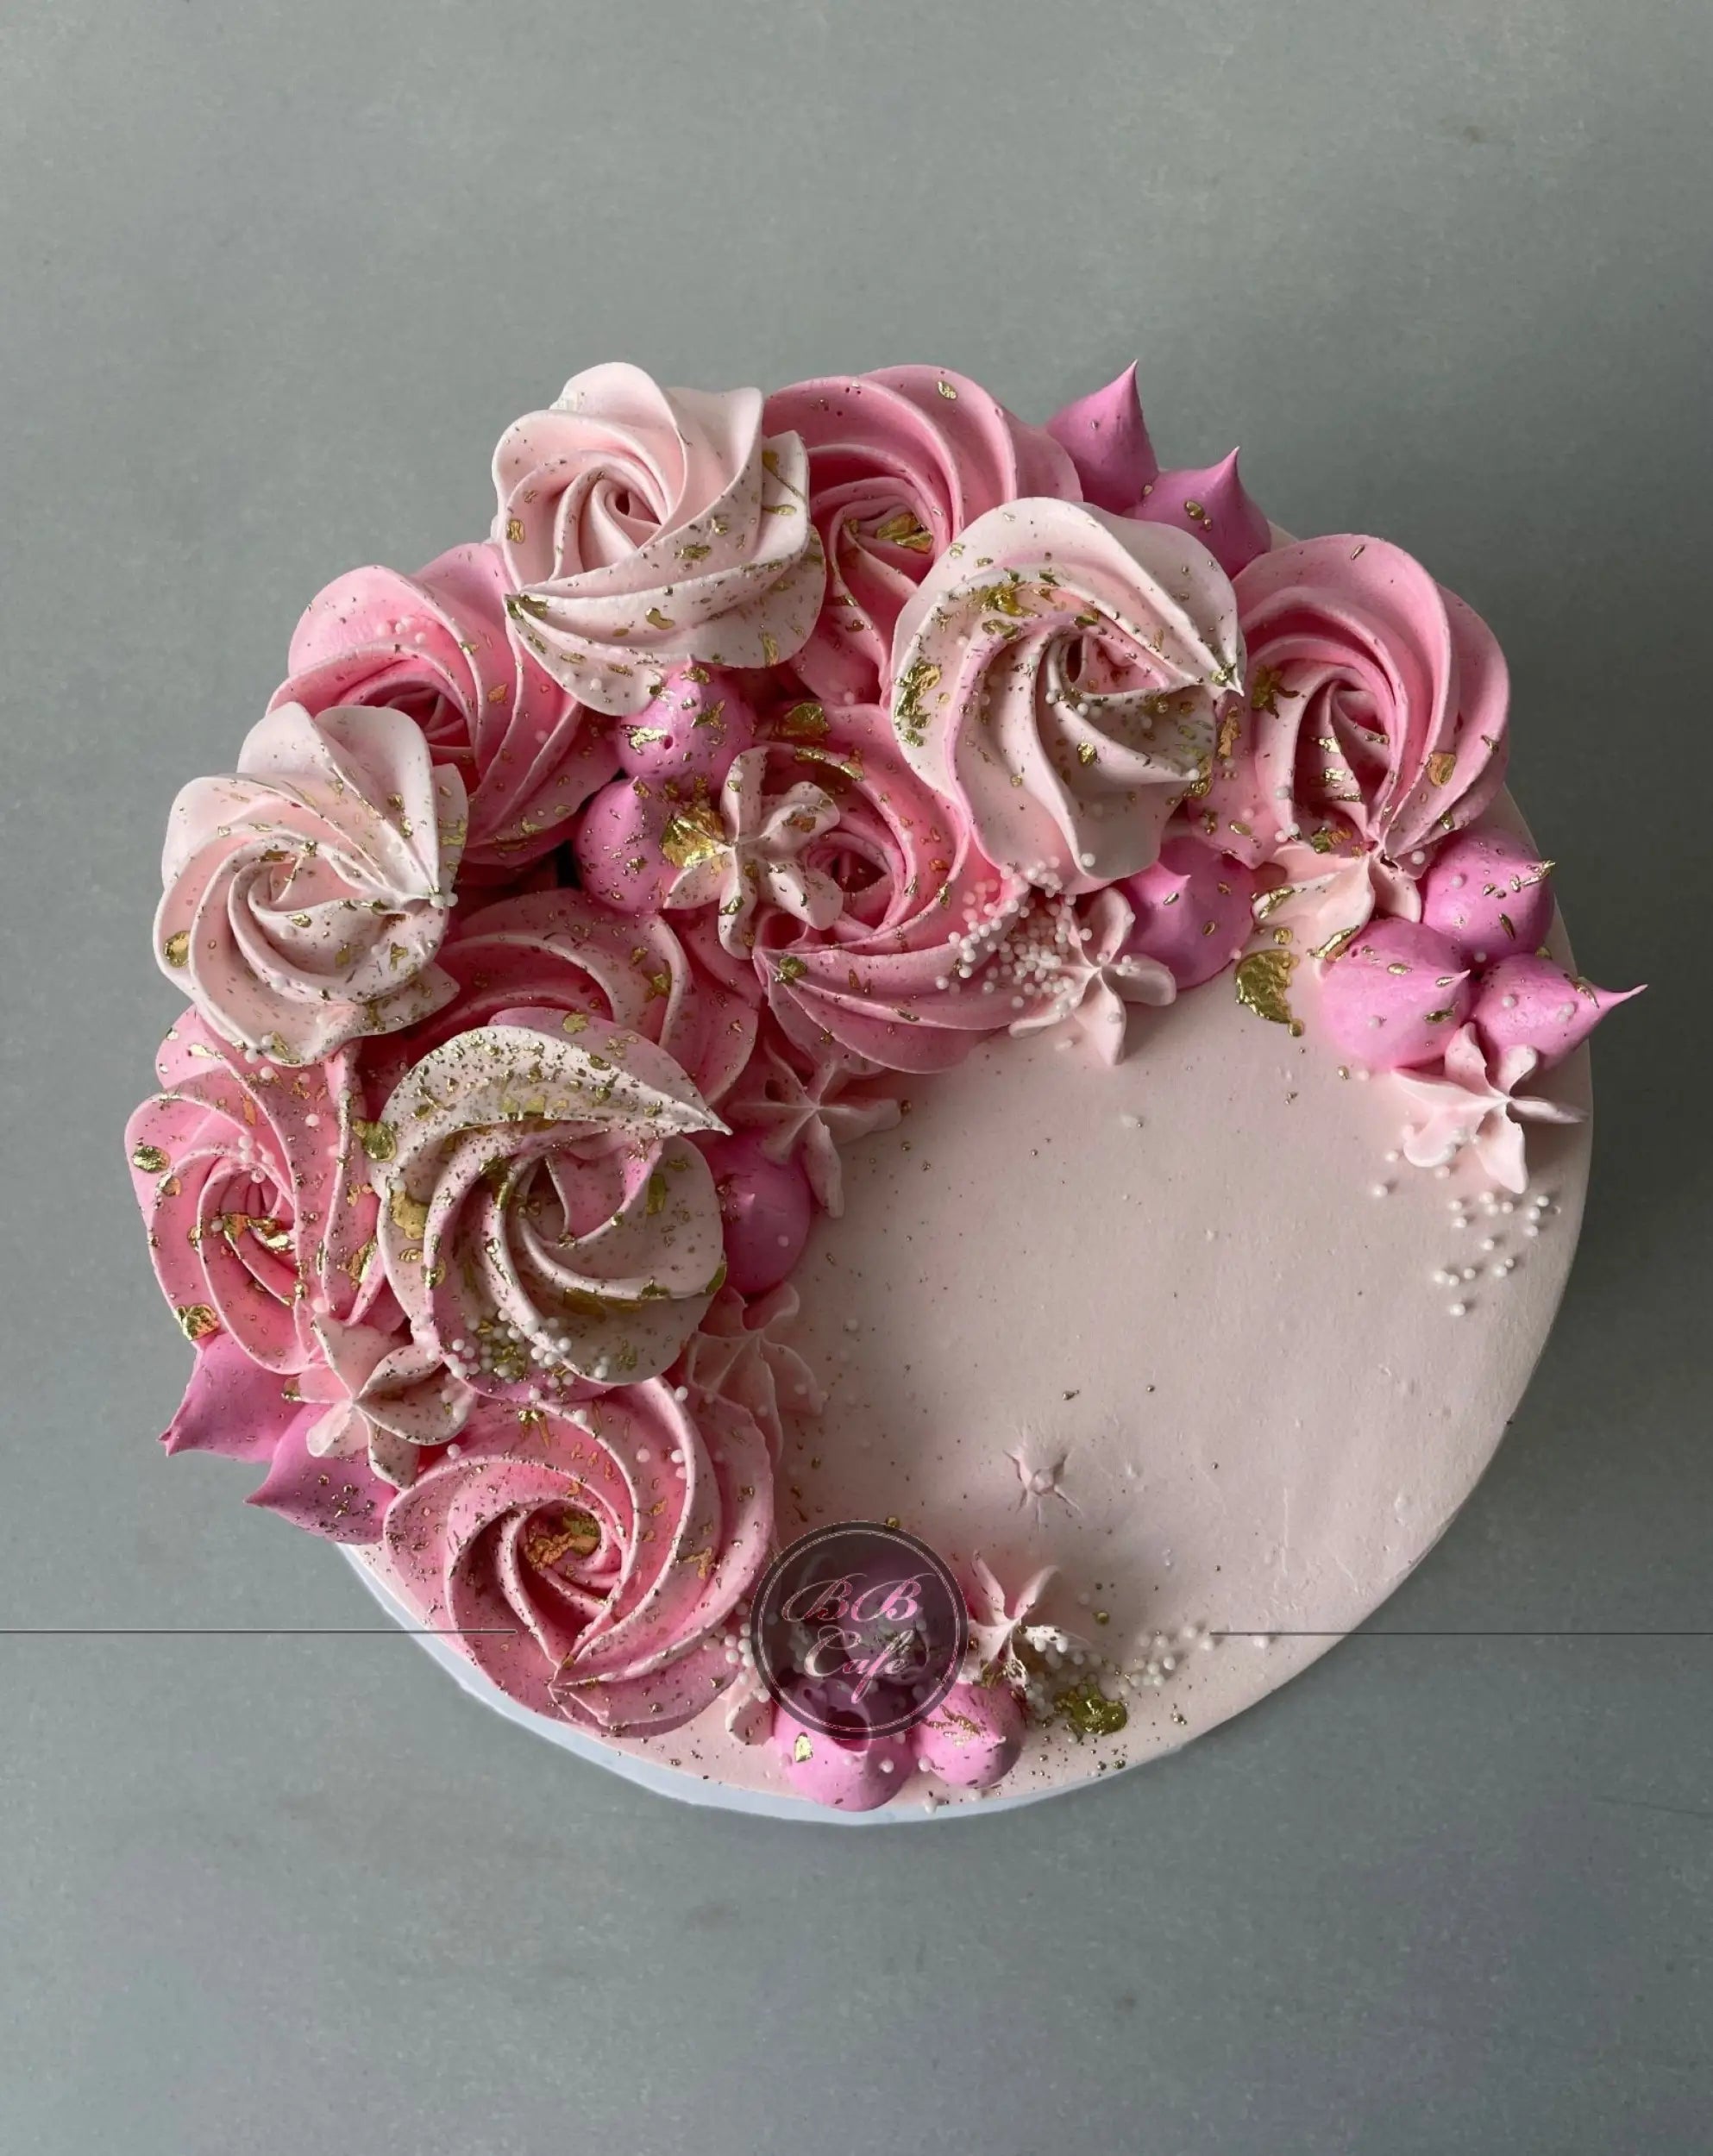 Crescent moon rosettes in whipped cream - custom cake